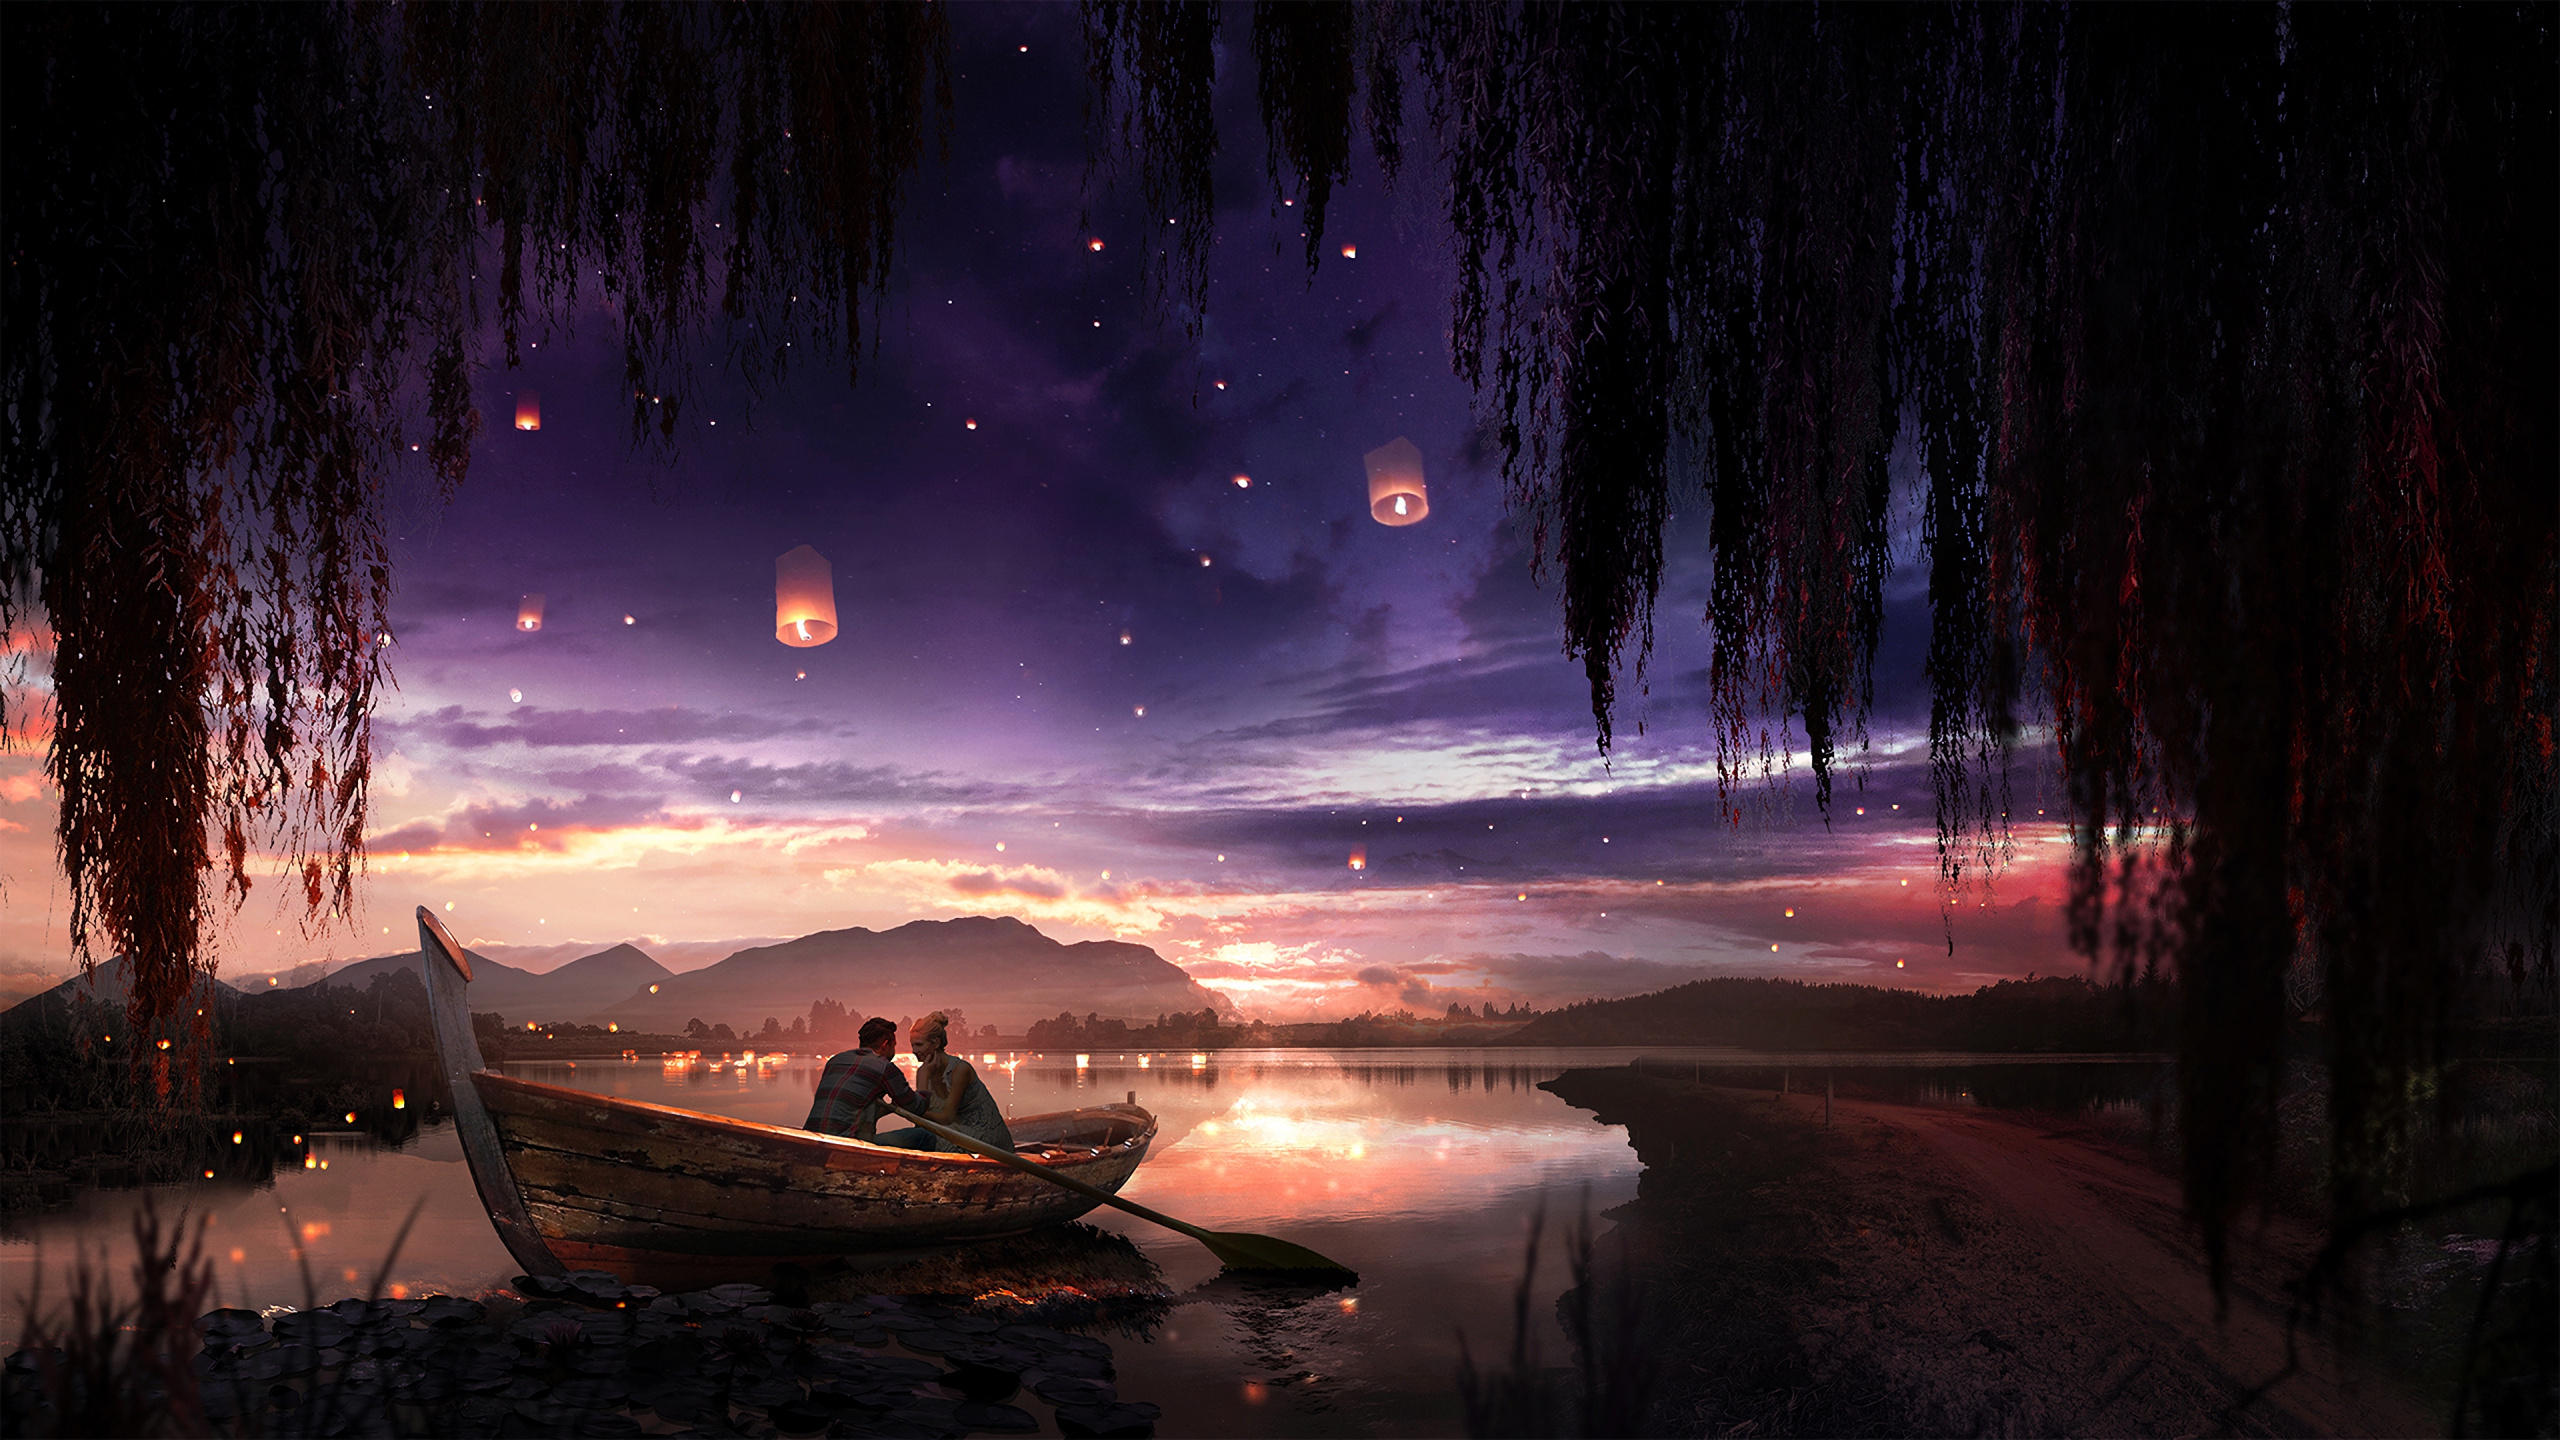 Natur, Wasser, Nacht, Atmosphäre, Reflexion. Wallpaper in 2560x1440 Resolution